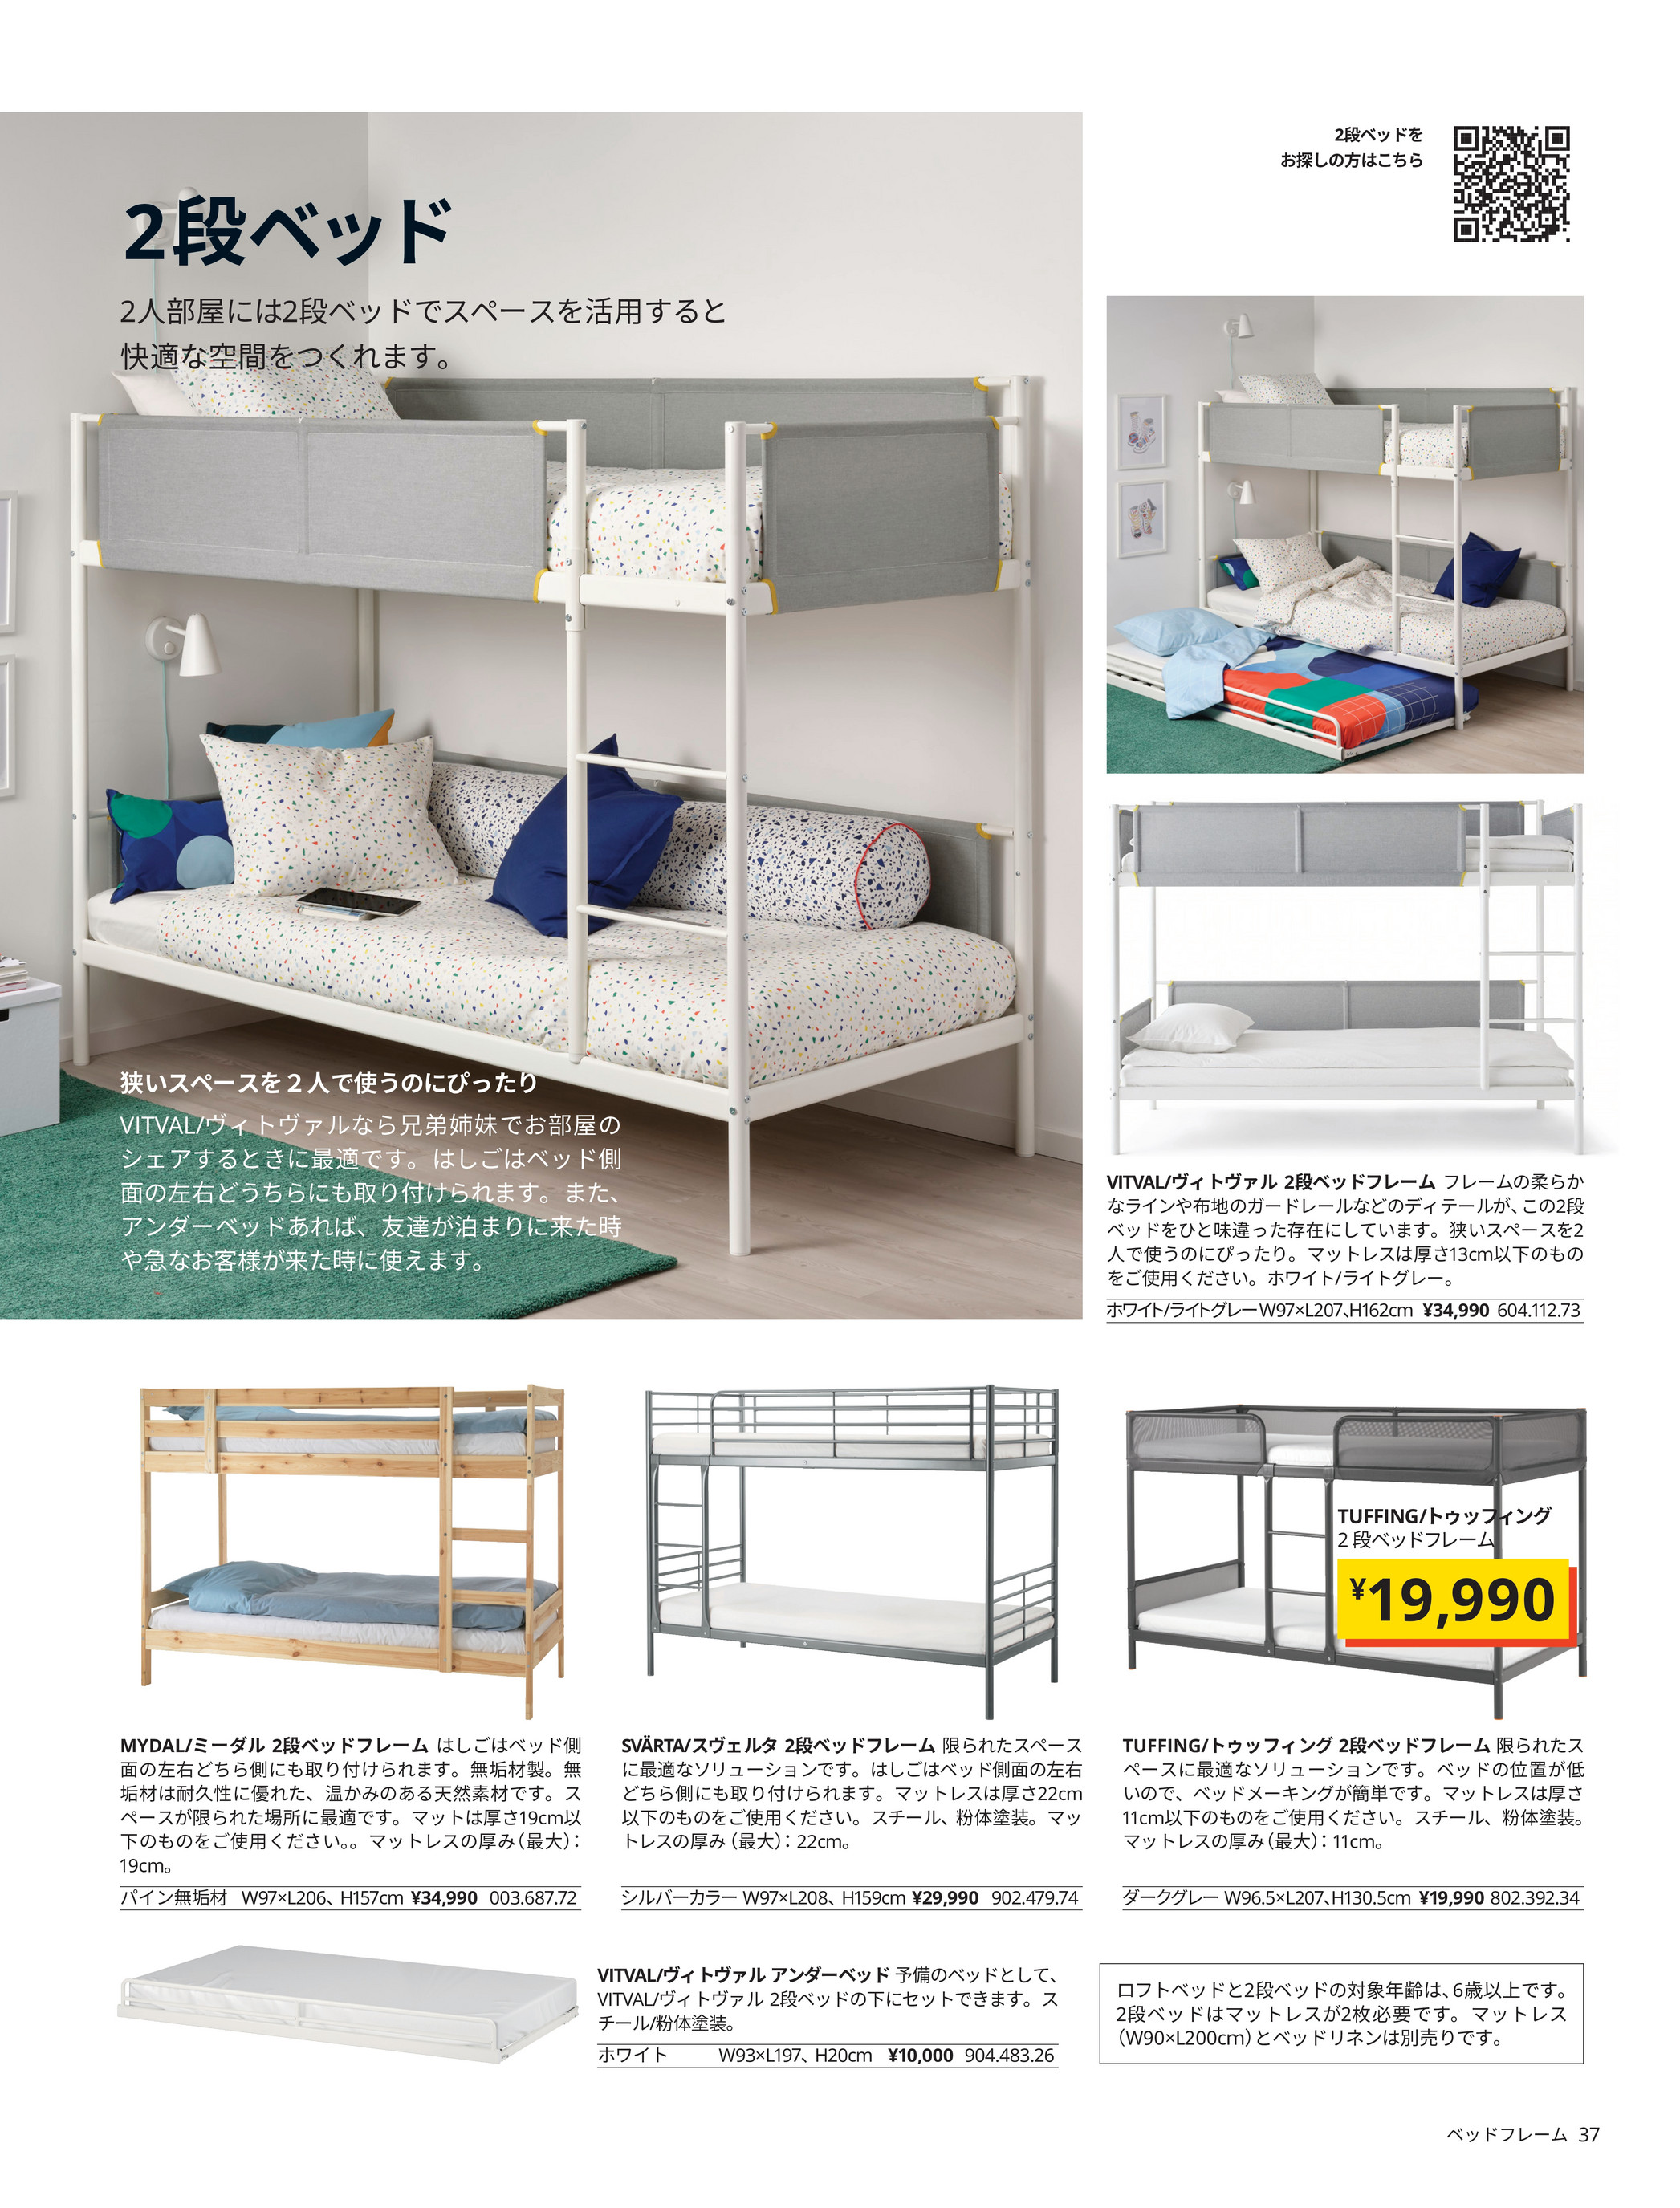 IKEA 赤ちゃんと子どもの眠りのカタログ - ページ 4-5